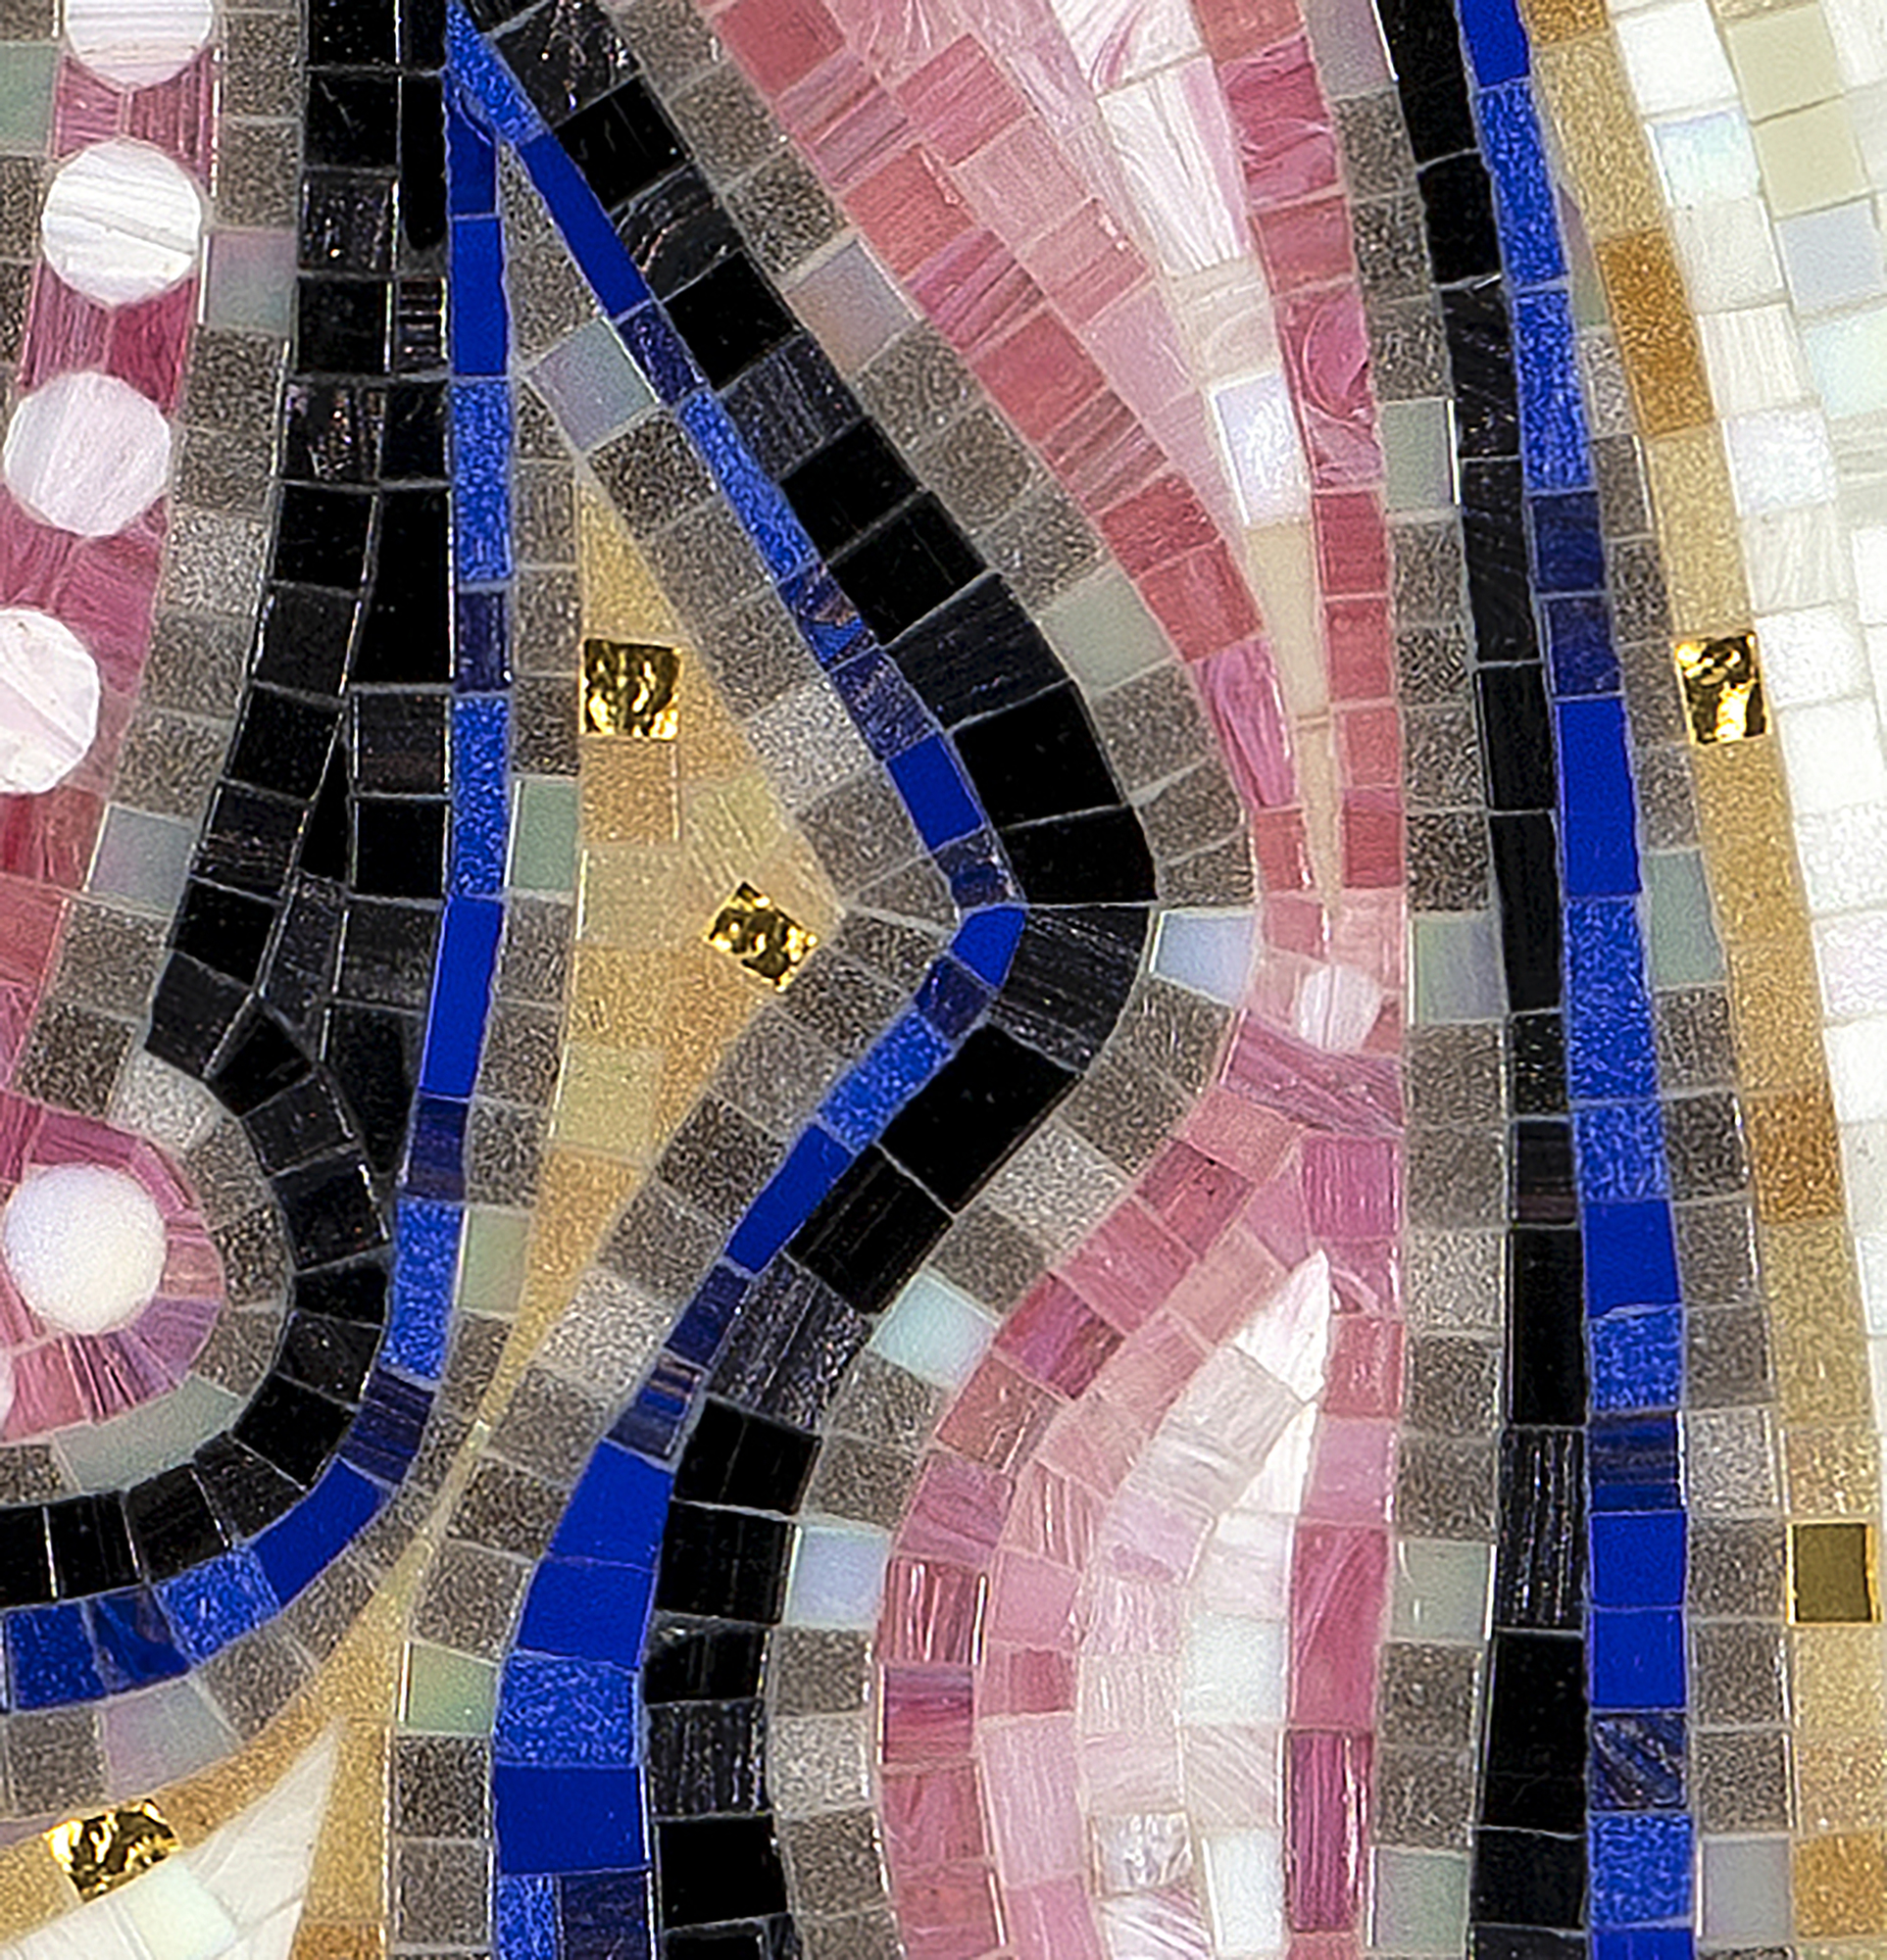 CARLOS LUNA - Iluminado - byzantinisches Mosaik - 47 1/2 x 82 in.